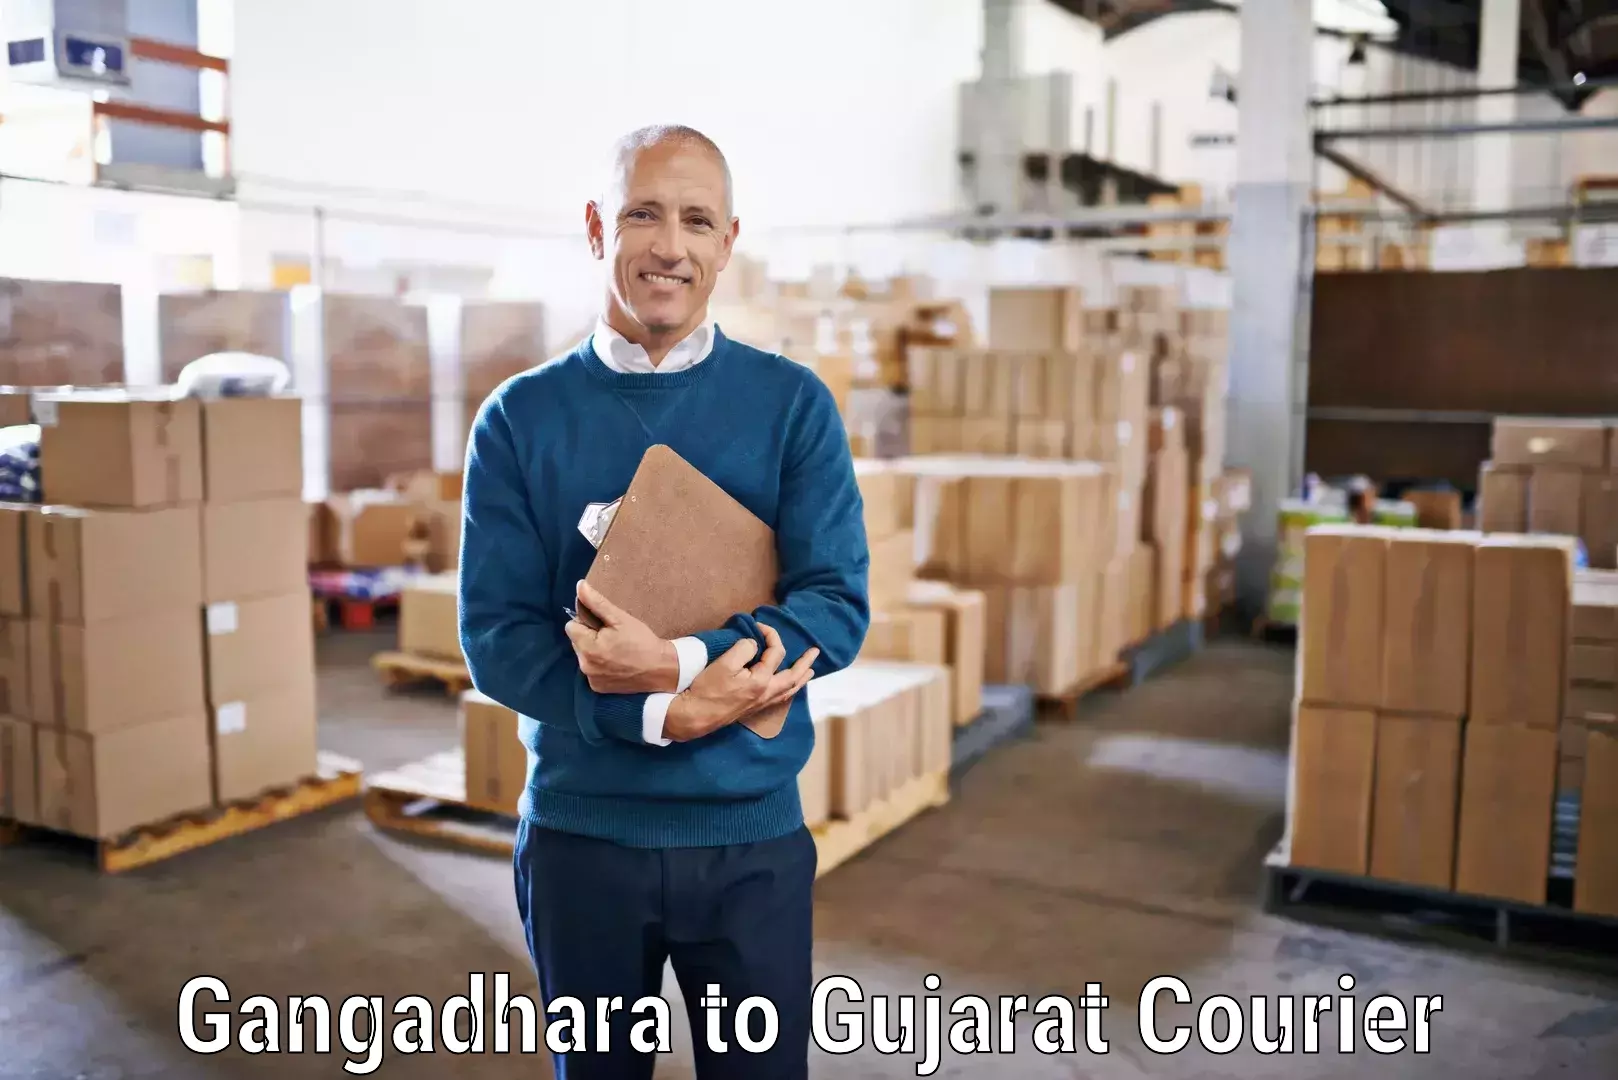 International courier rates Gangadhara to Dholera